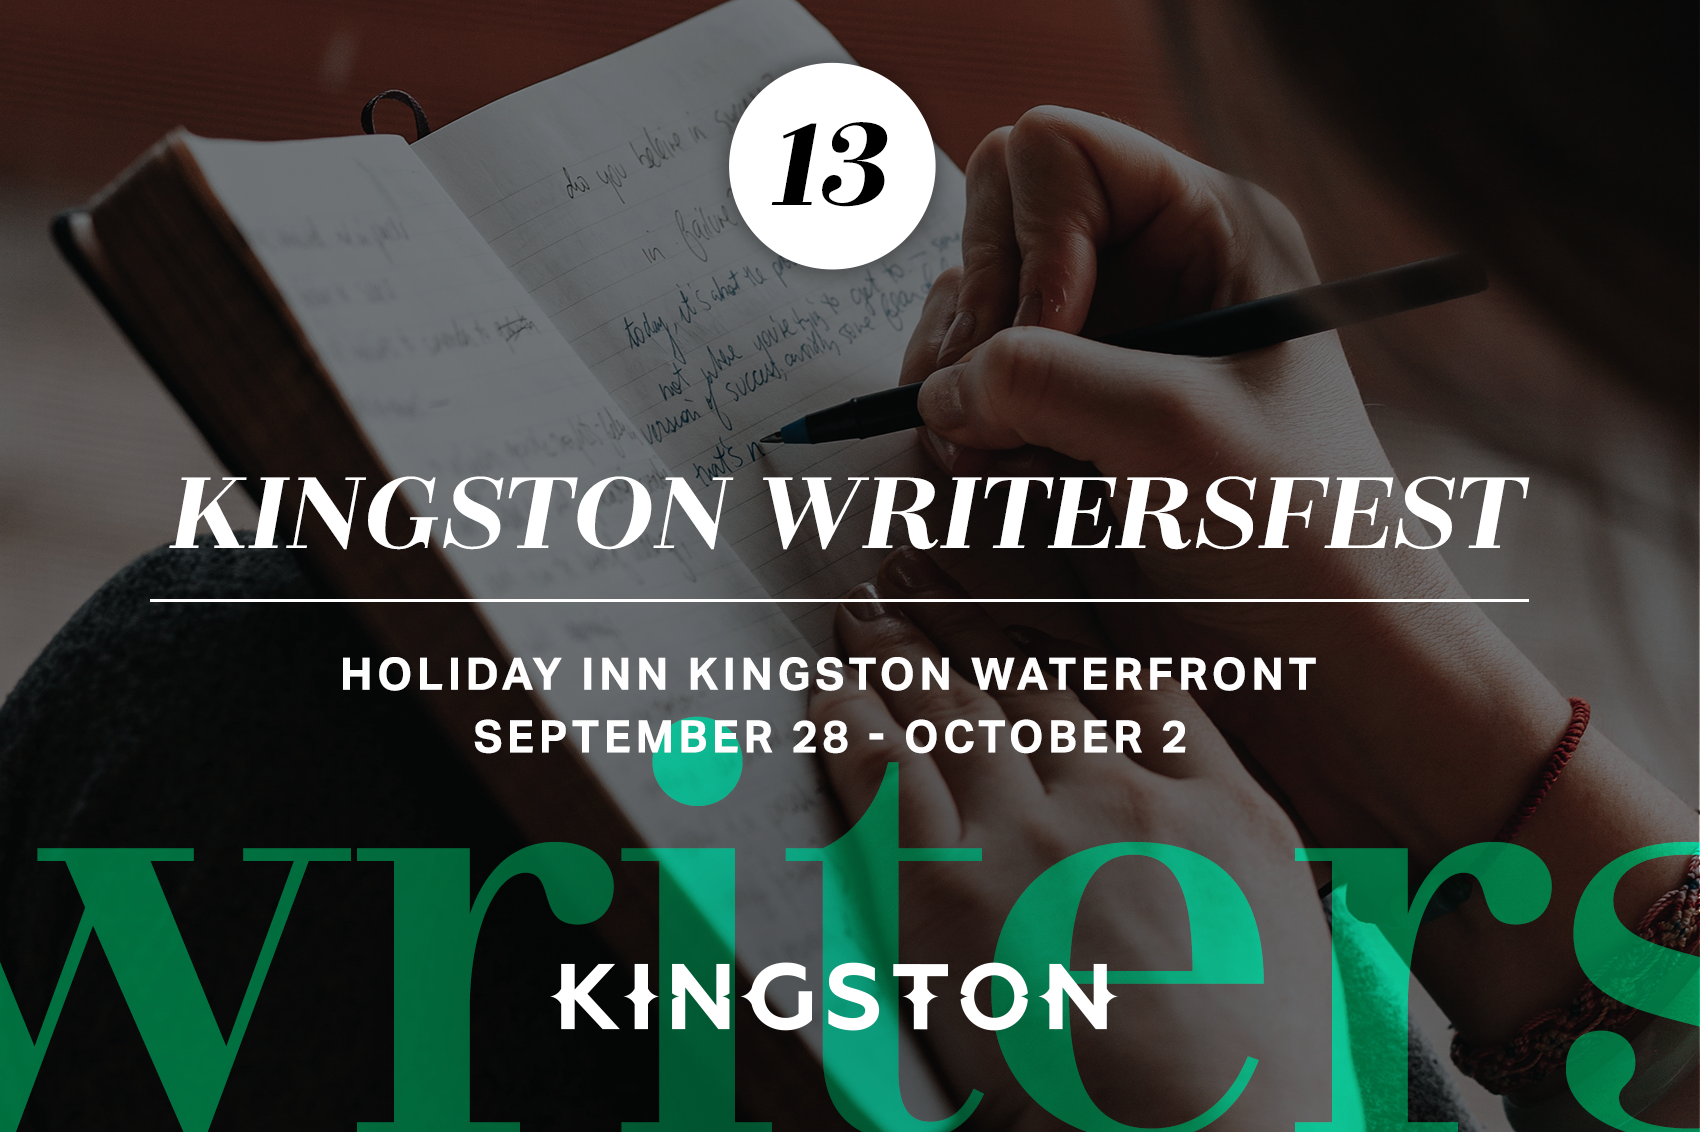 13. Kingston Writersfest : Holiday Inn Kingston Waterfront September 28 - October 2